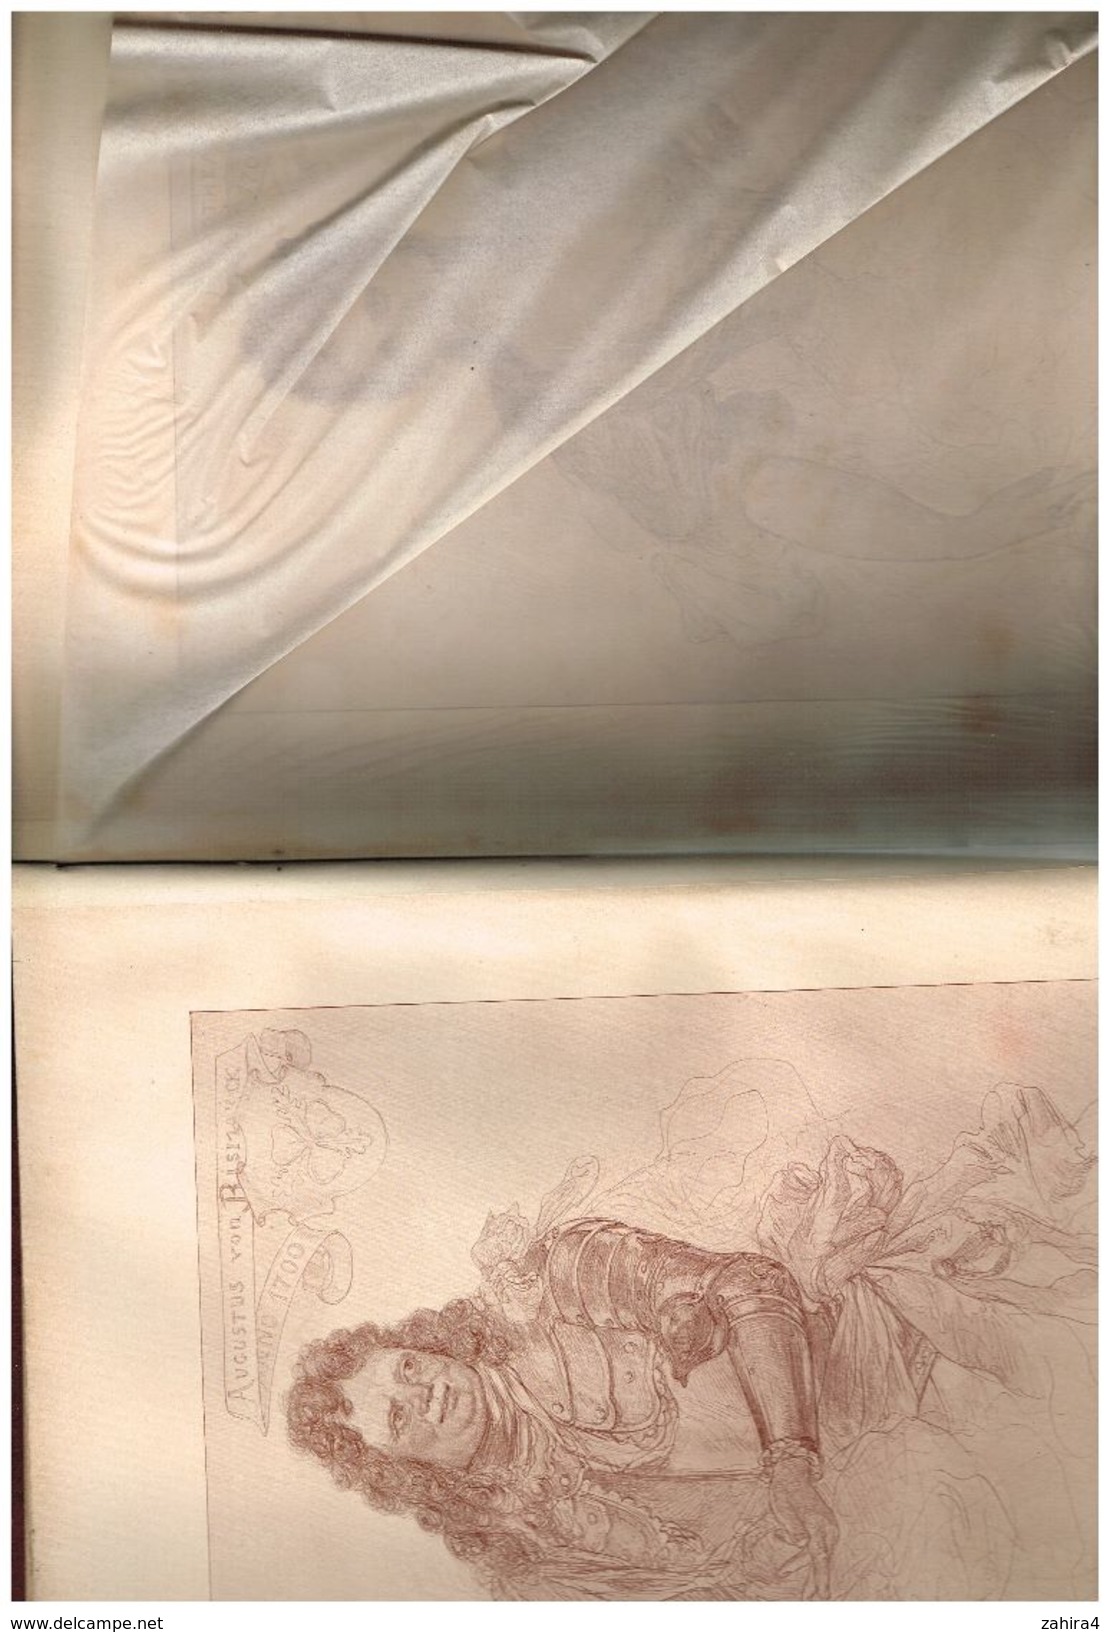 Illustrateur Trés rare Unser Bismarck Style BD 150 dessins 250 X 340 signés avec nom date commentaire Rédigé en gothique